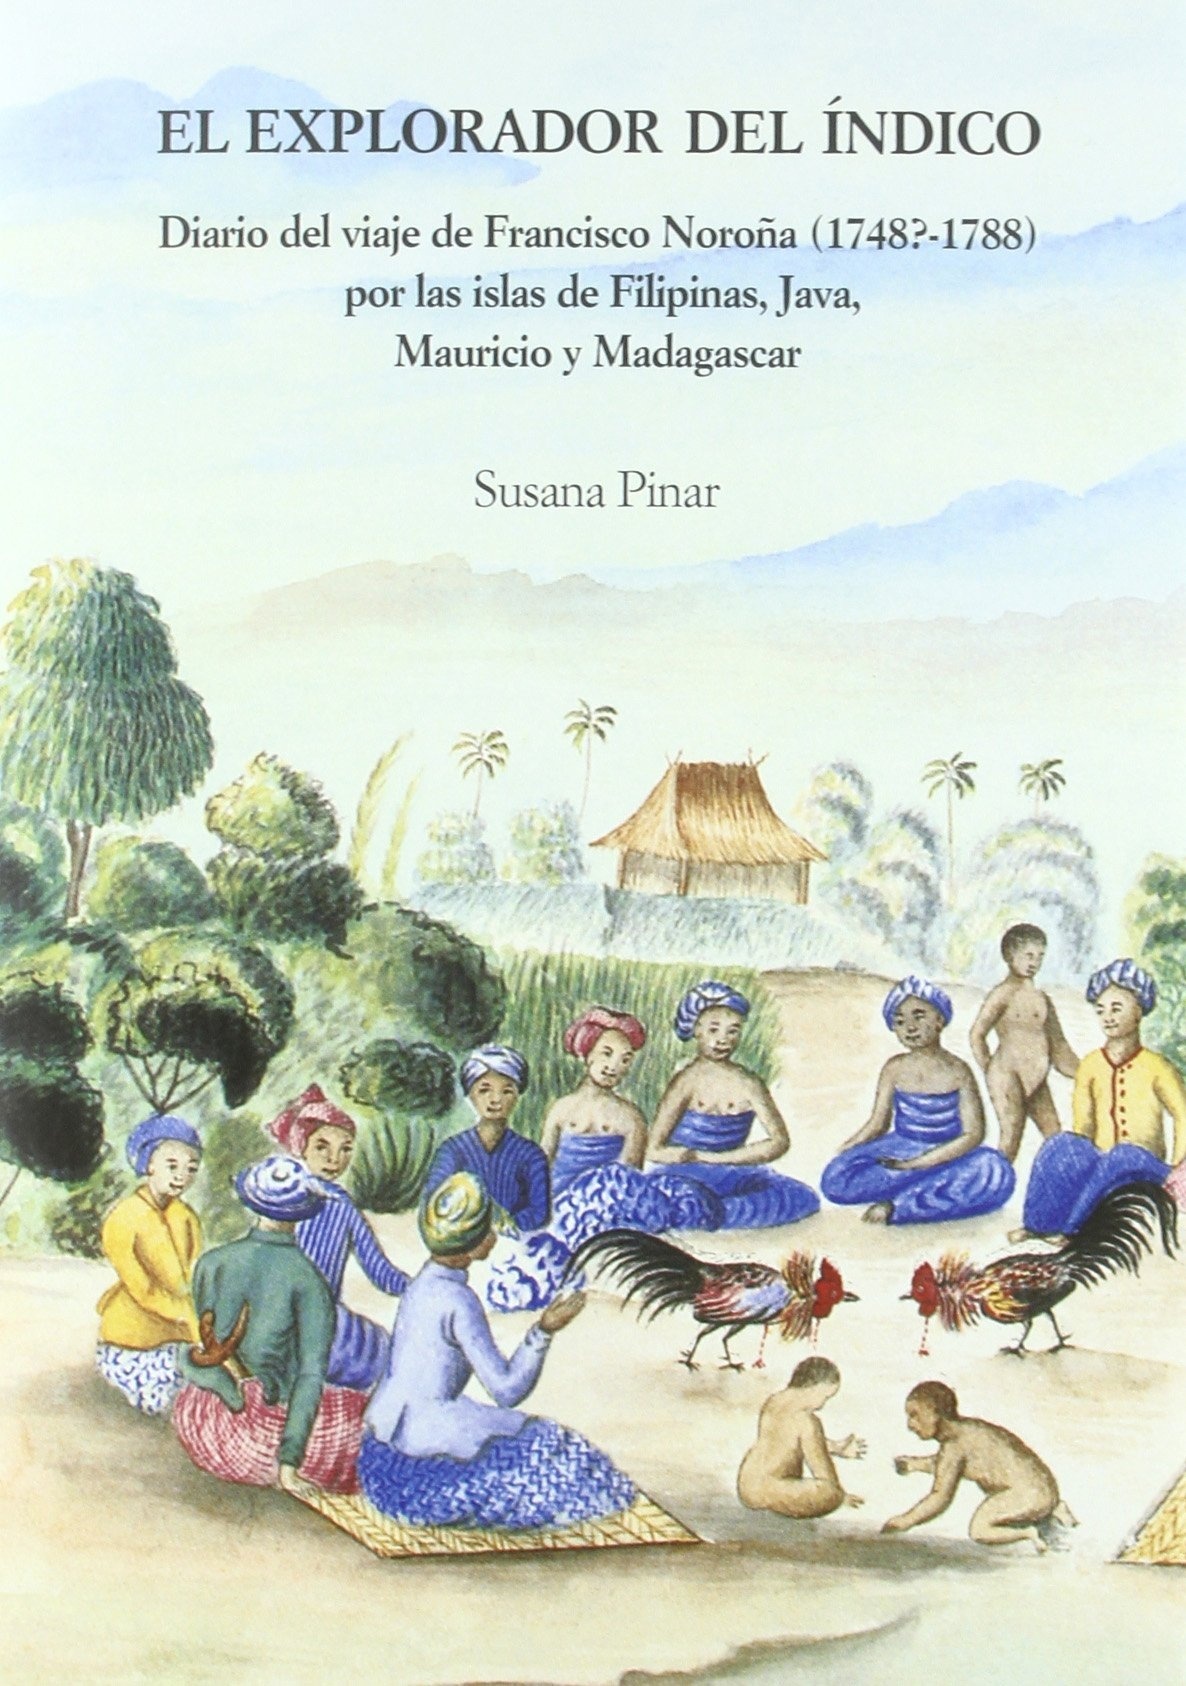 El explorador del Índico. Diario de Francisco Noroña (1748?-1788) "por las Islas Filipinas, Java, Mauricio y Madagascar"